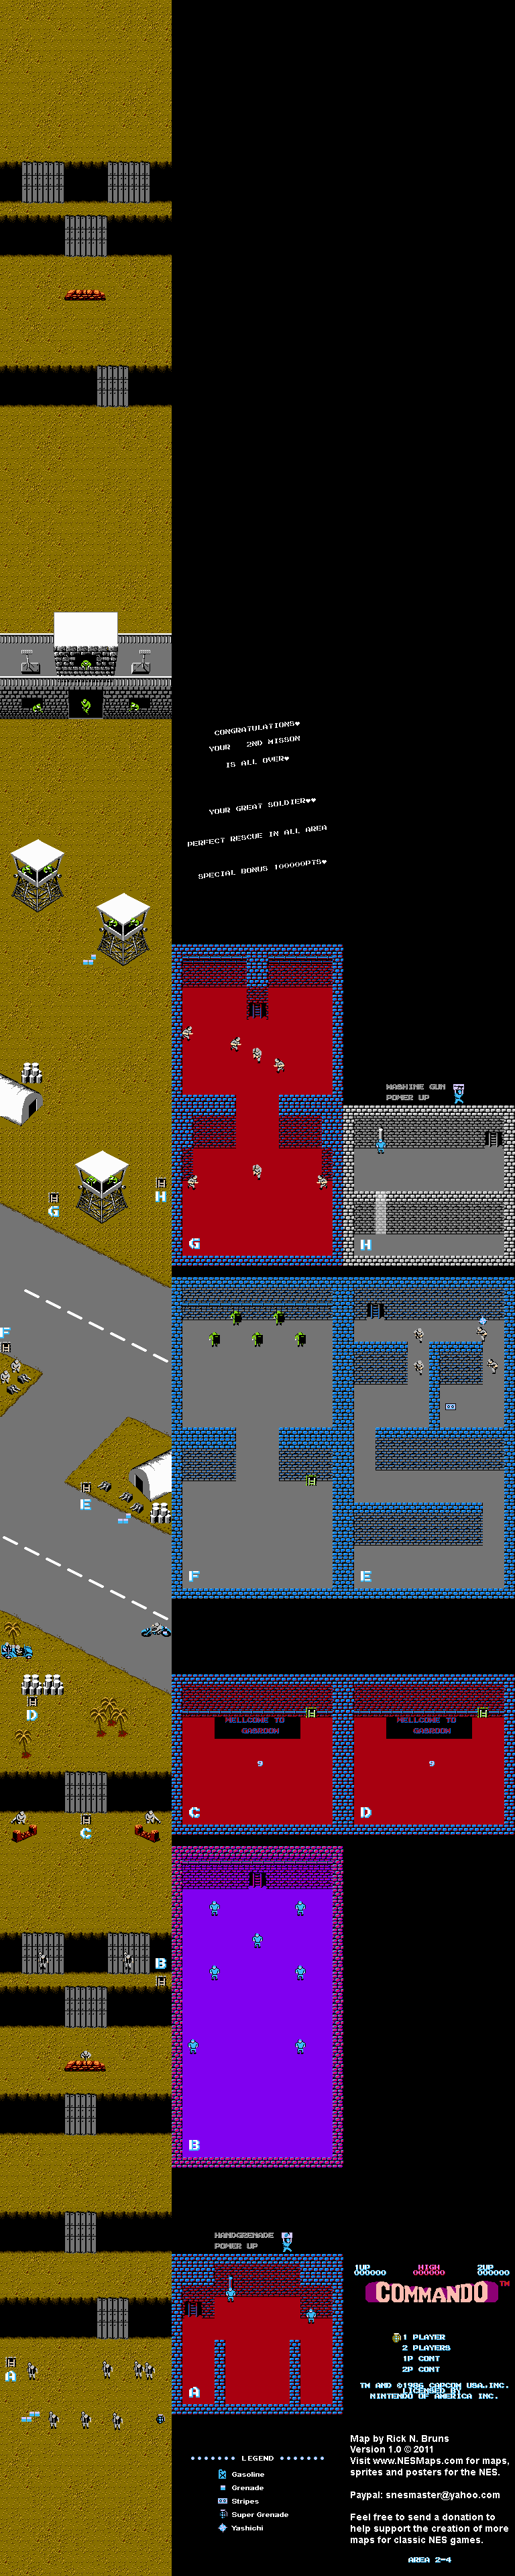 Commando - Area 2-4 - Nintendo NES Map